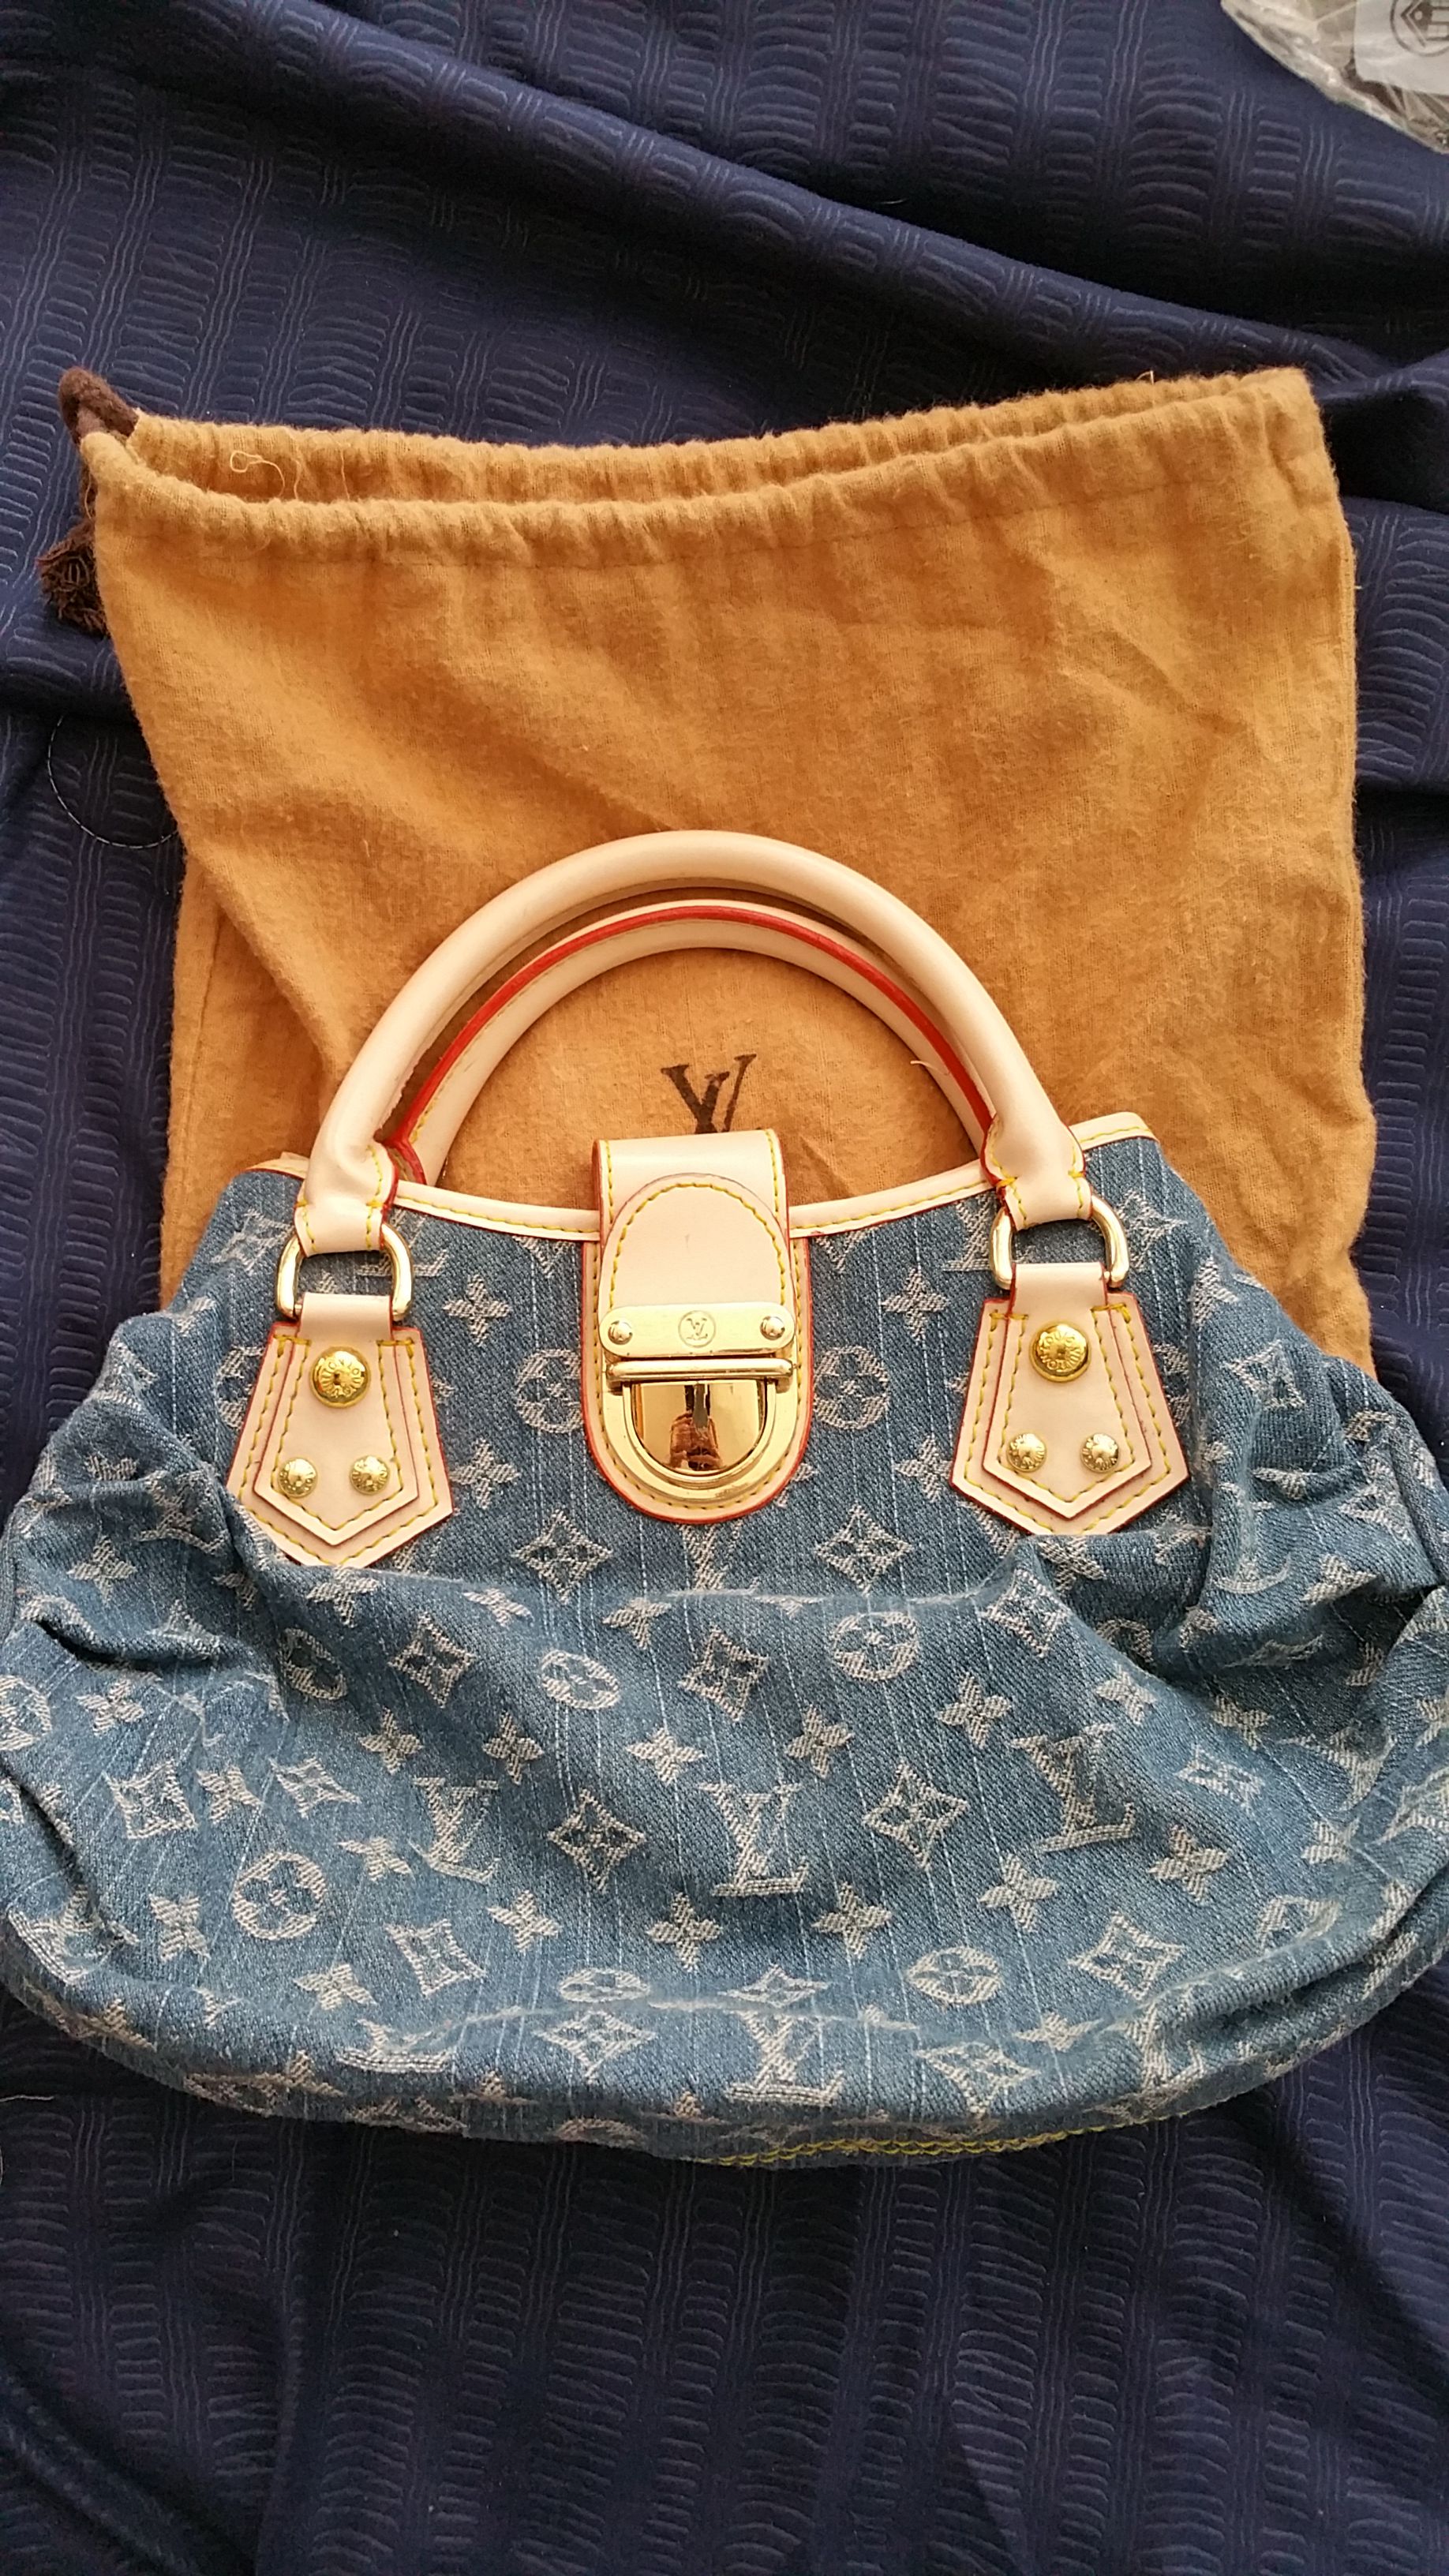 Louis Vuitton Monogram Denim Pleaty Bag for Sale in Anaheim, CA - OfferUp